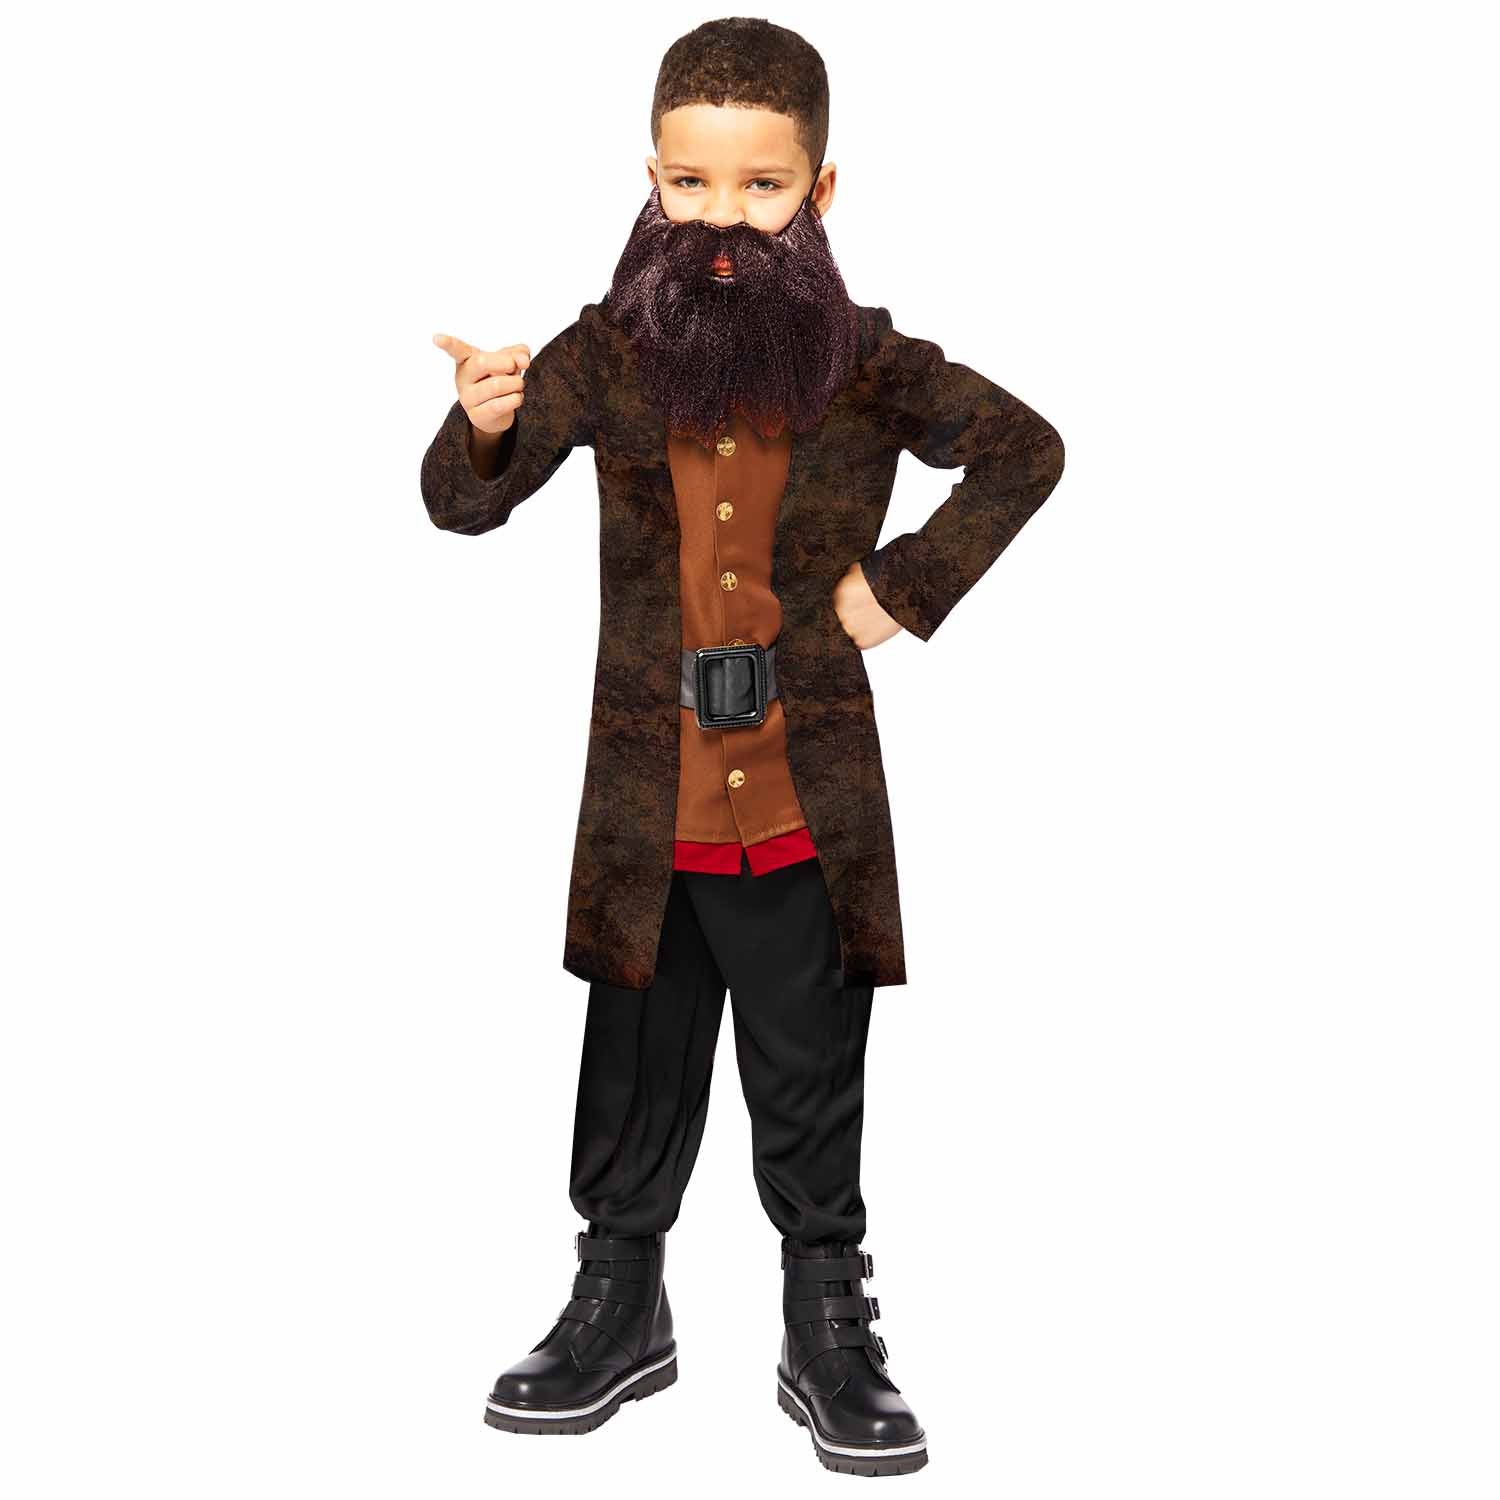 Child Hagrid Costume